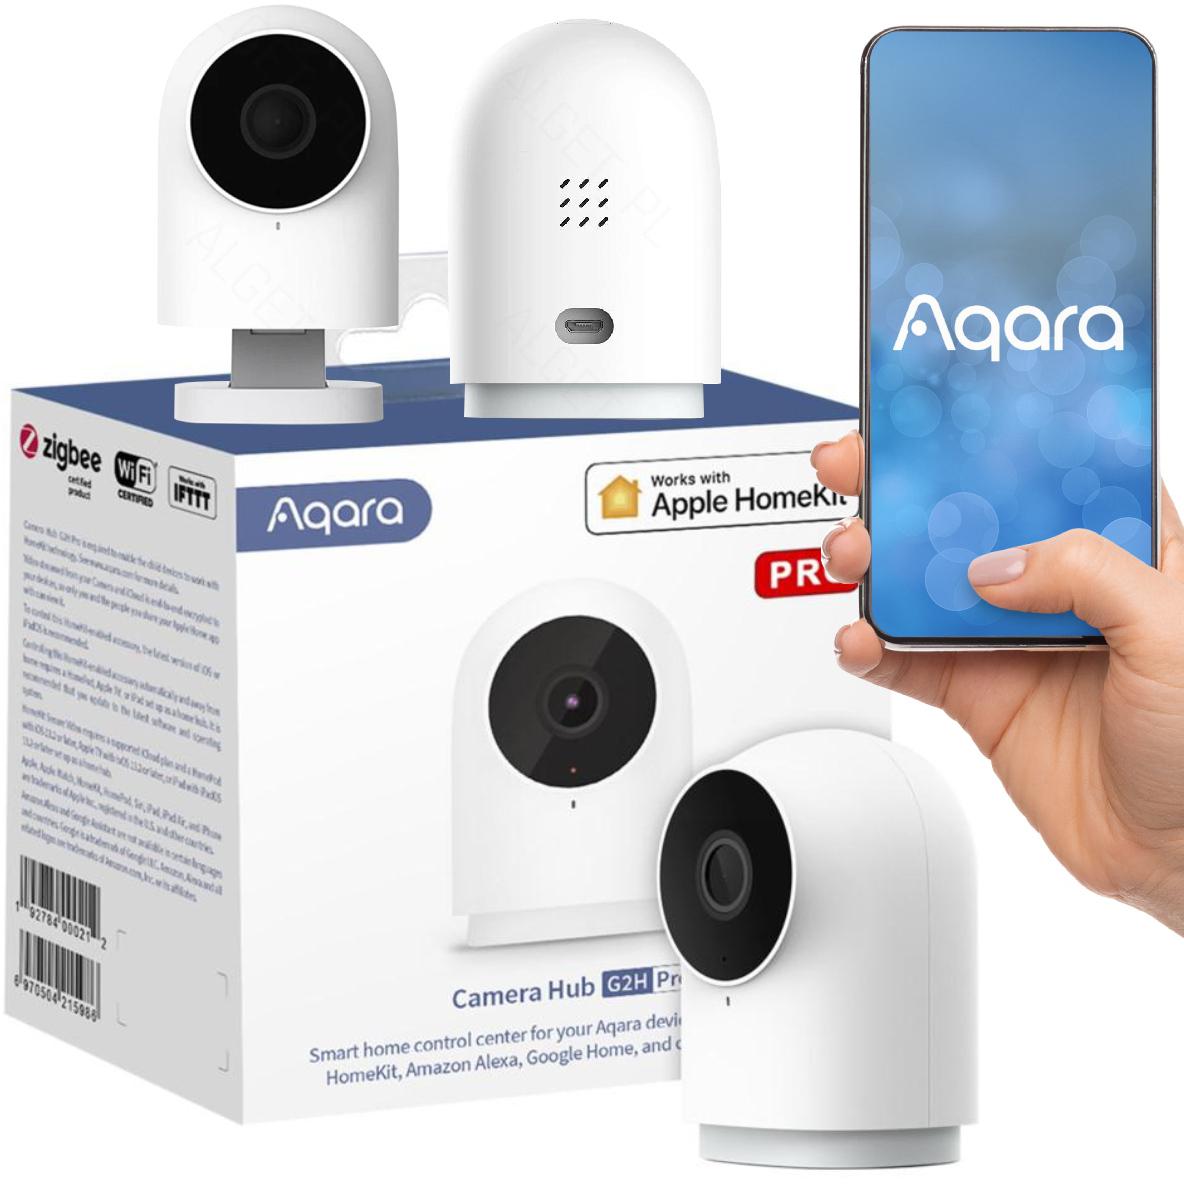 Inteligenta kamera AQARA HUB G2H PRO i jej najważniejsze cechy: